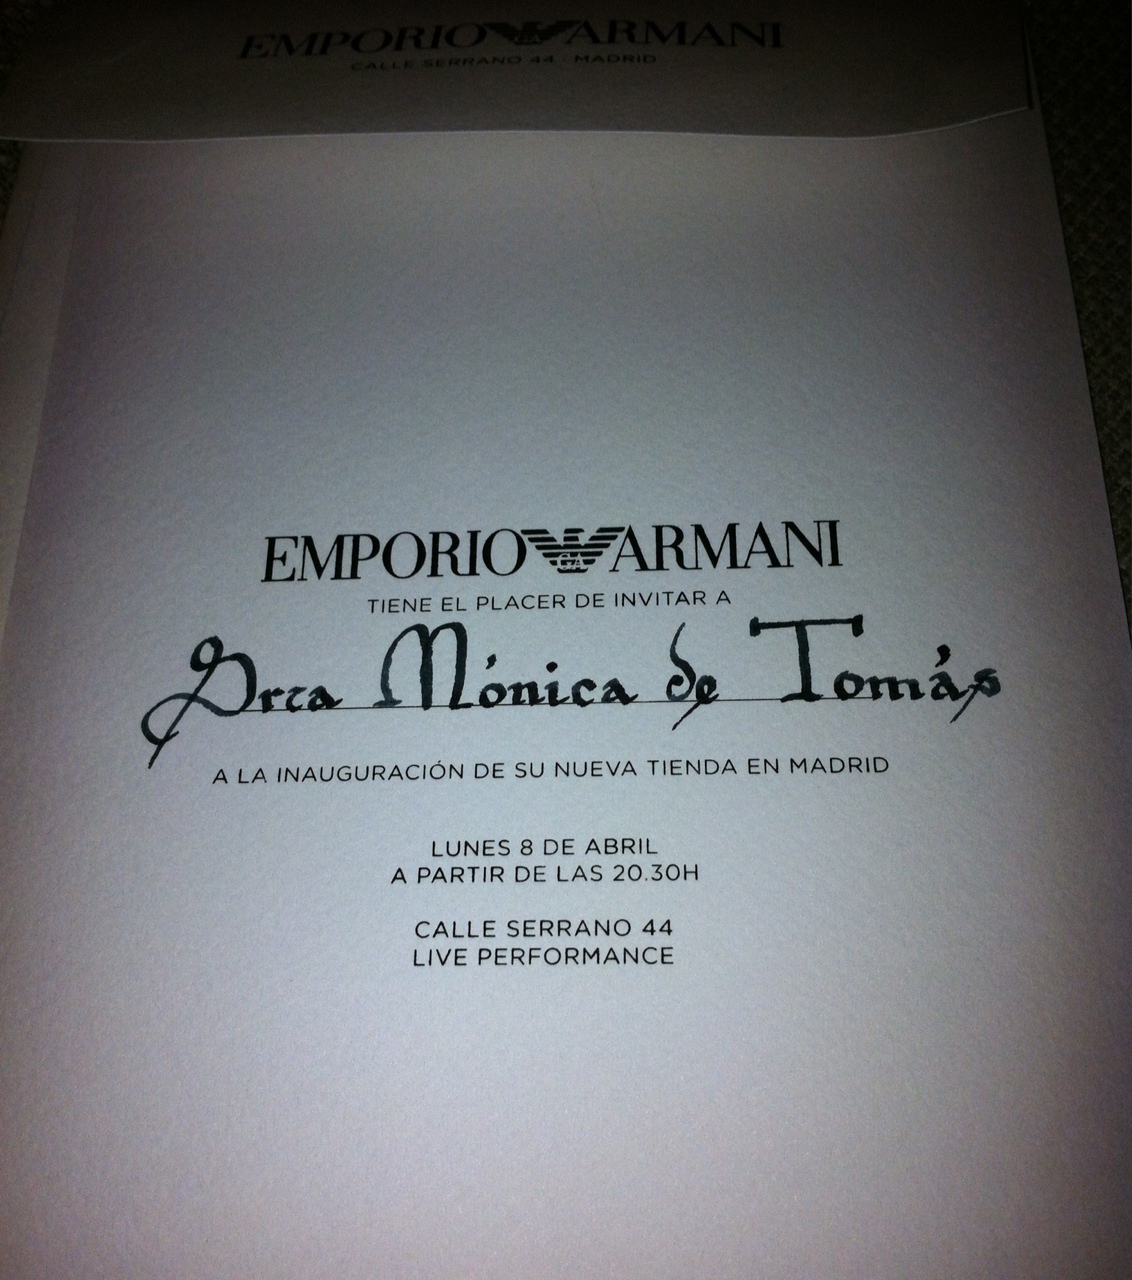 Look Emporio Armani Opening party!